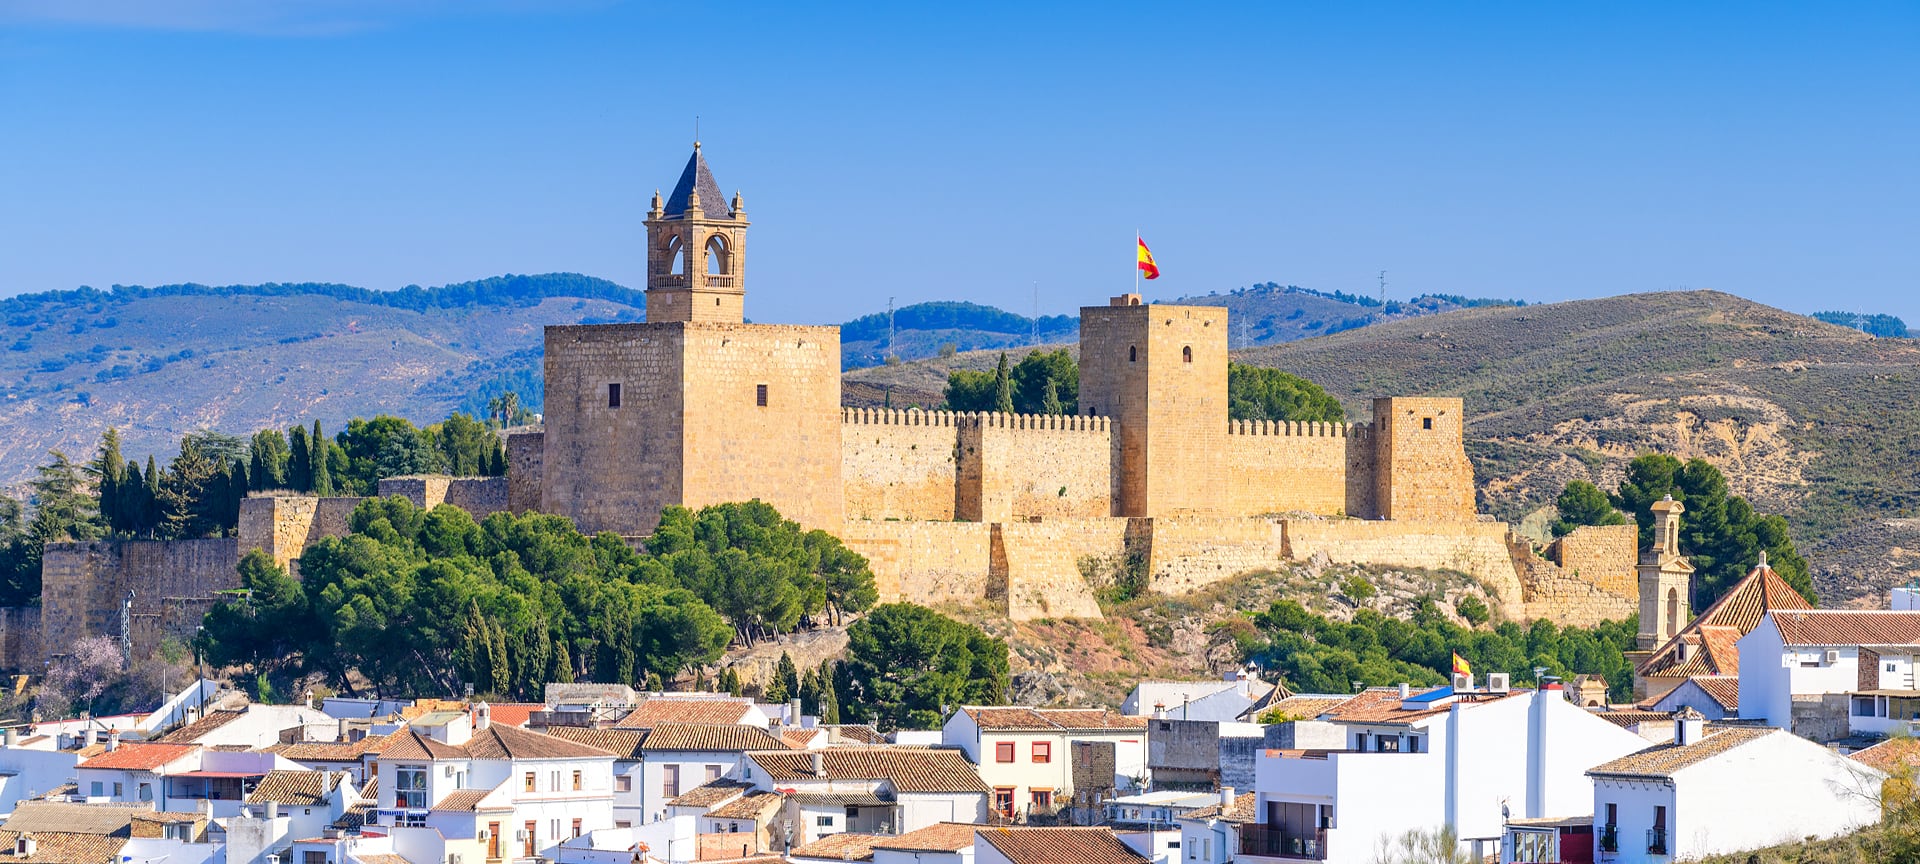 Historisch kasteel boven Spaanse stad met huizen en heuvels.